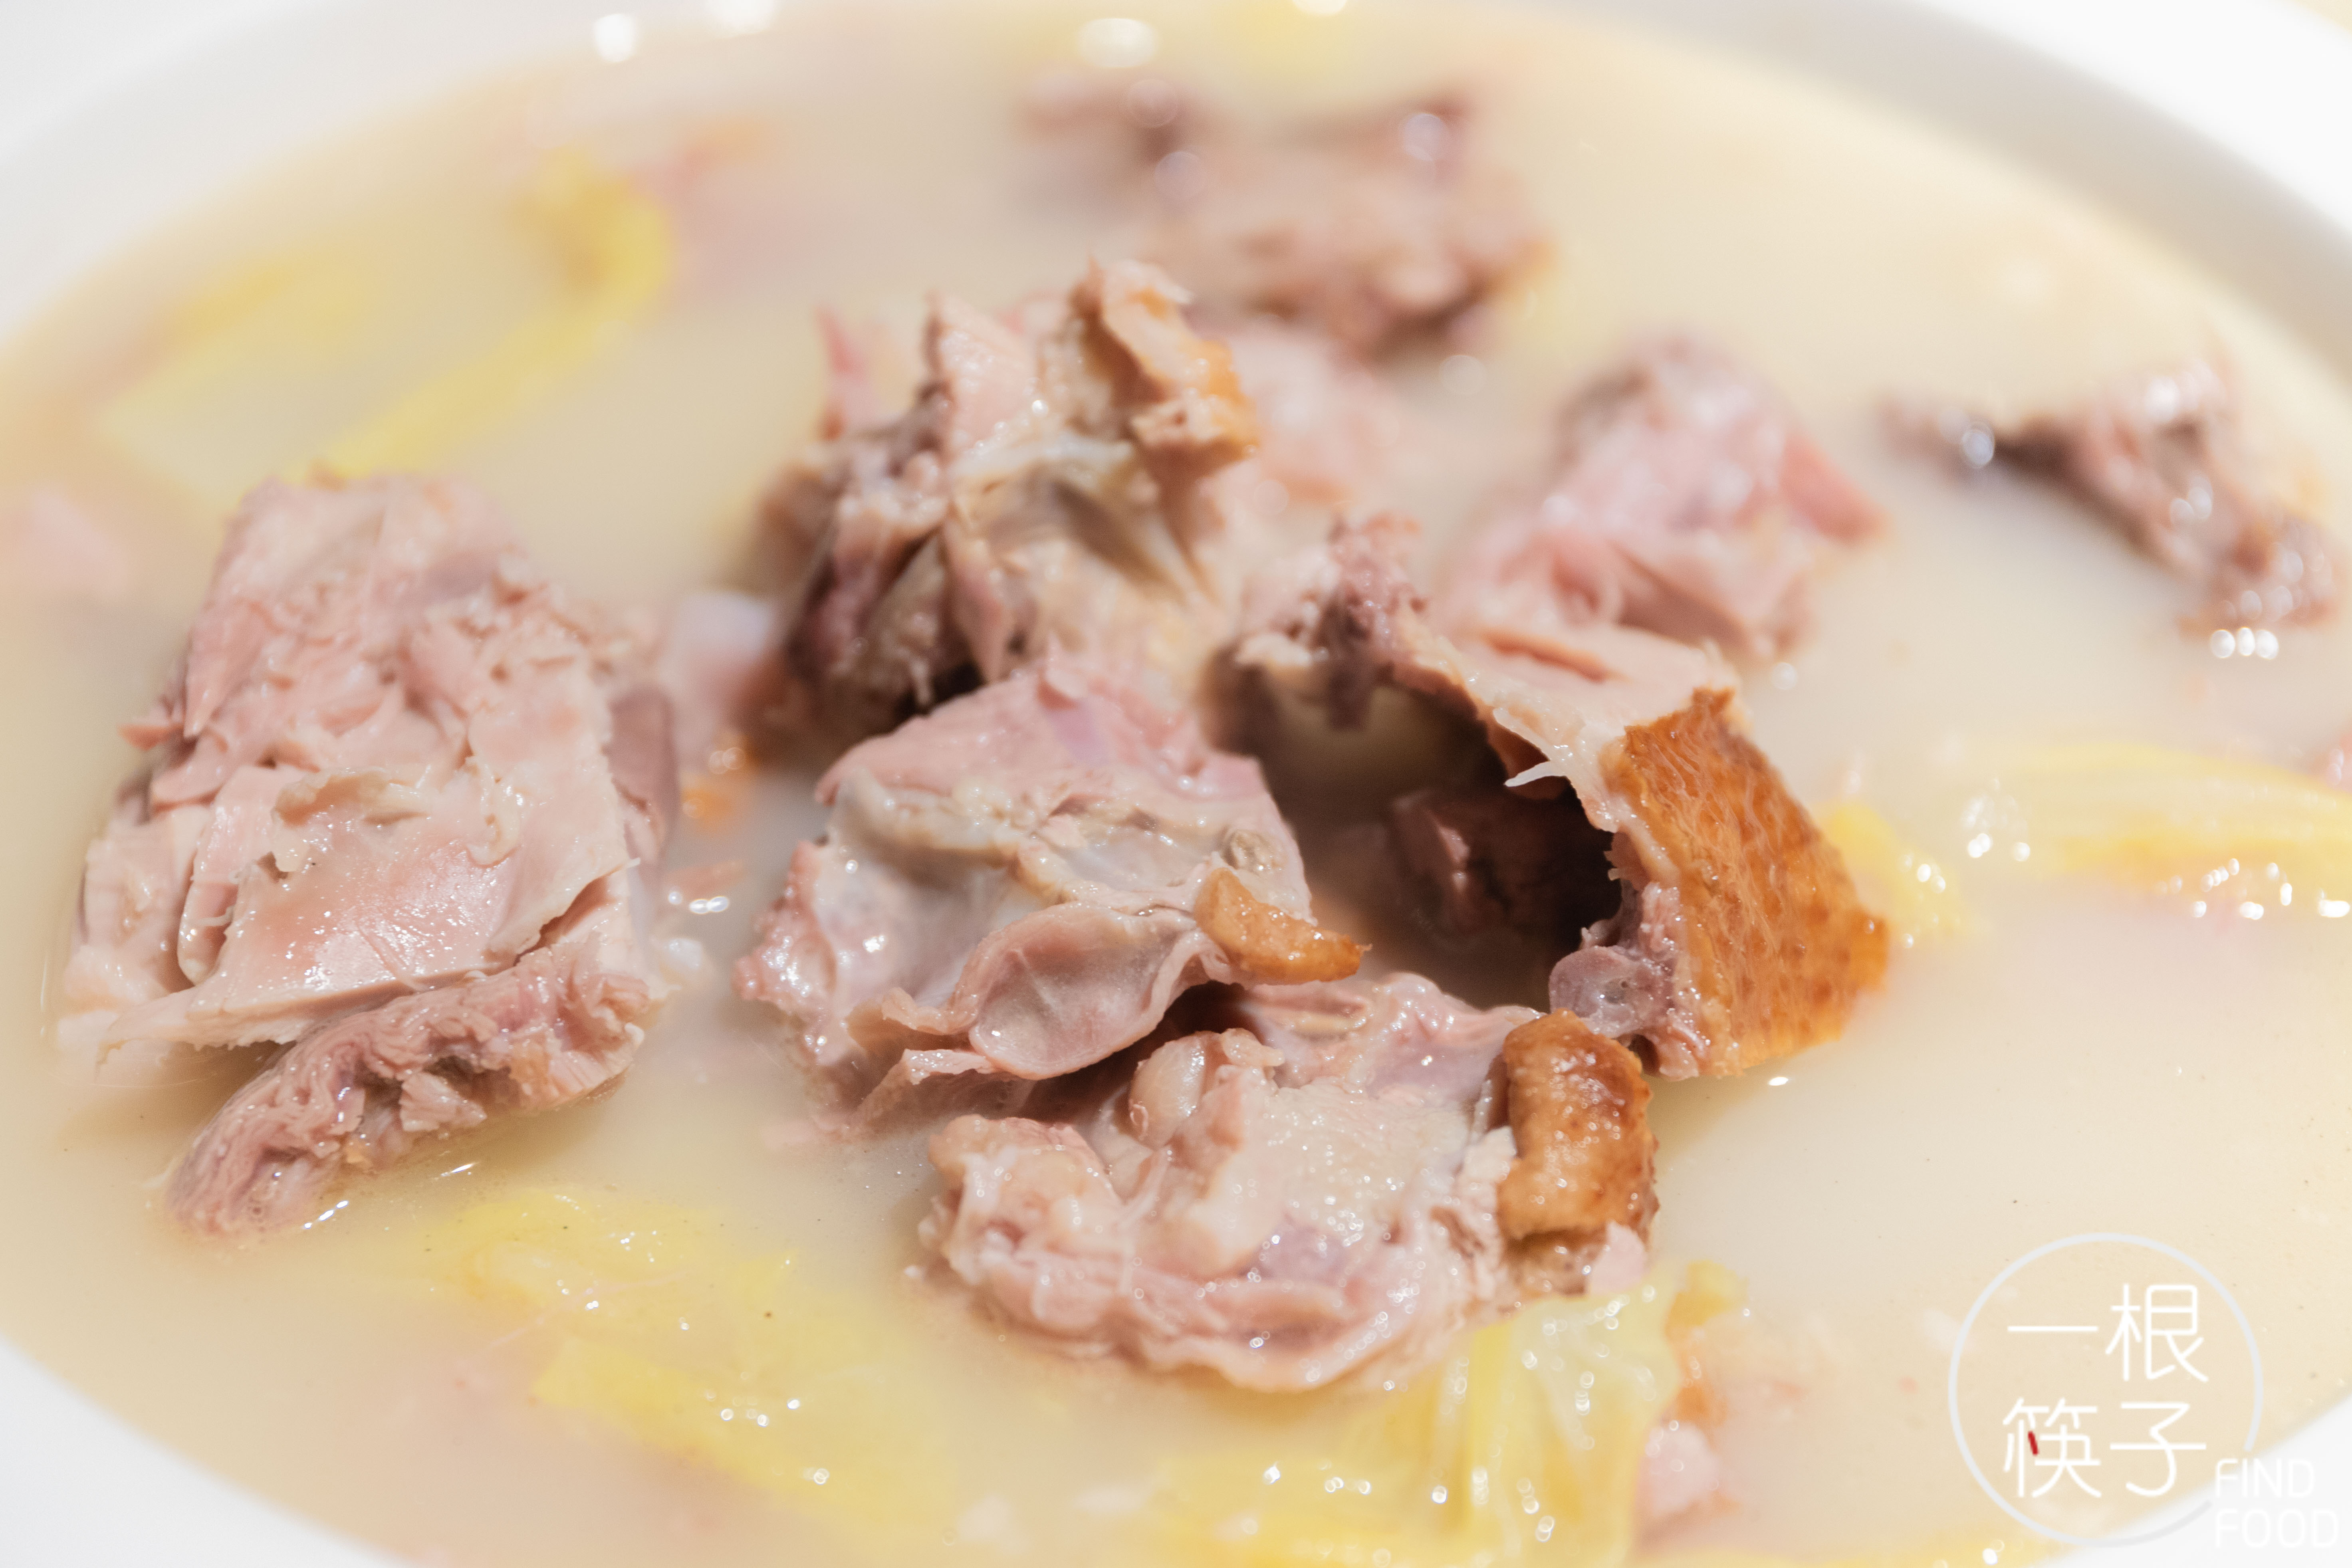 养生系食客zui宜次鸭架汤,刚端上来的鸭架汤醇厚浑白,鲜气四溢